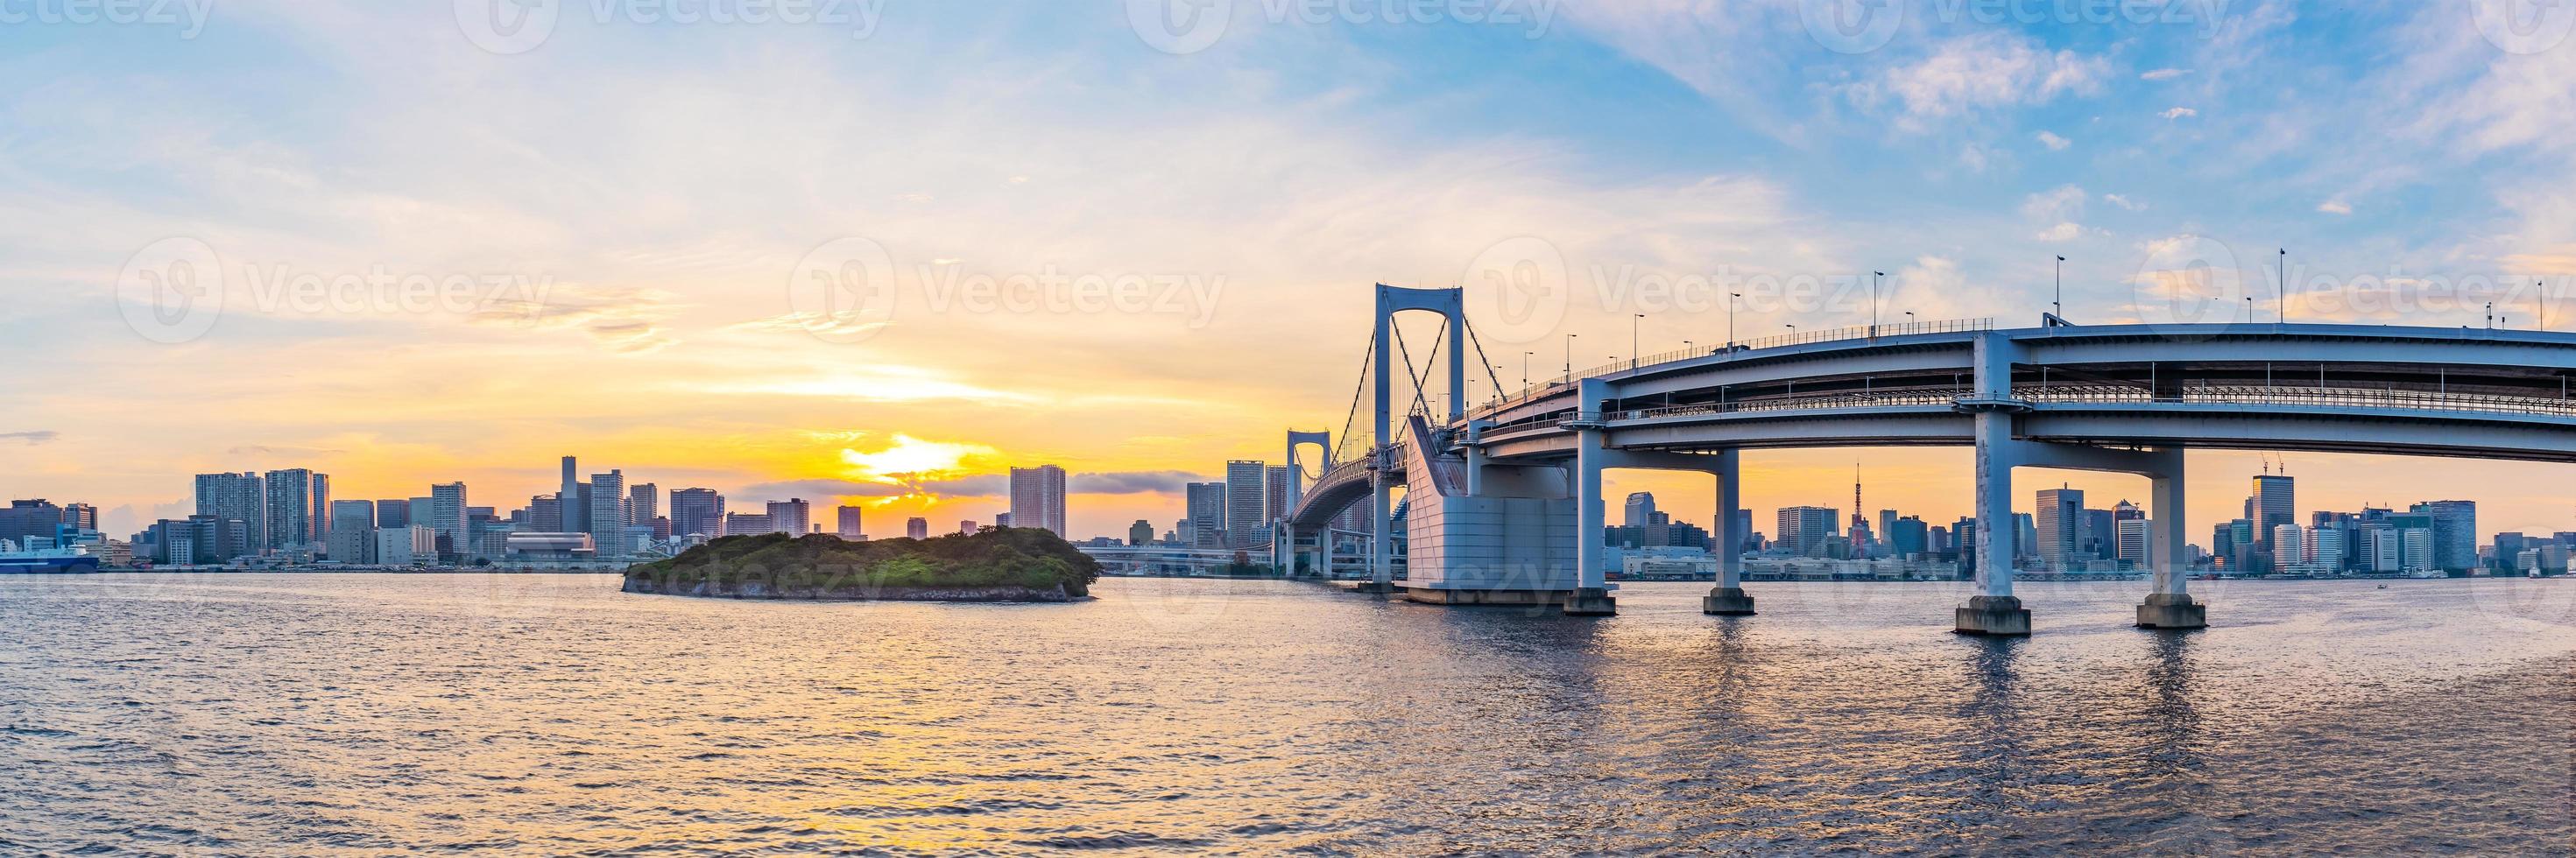 vista panoramica della skyline di tokyo quando il tramonto. tokyo city, giappone. foto